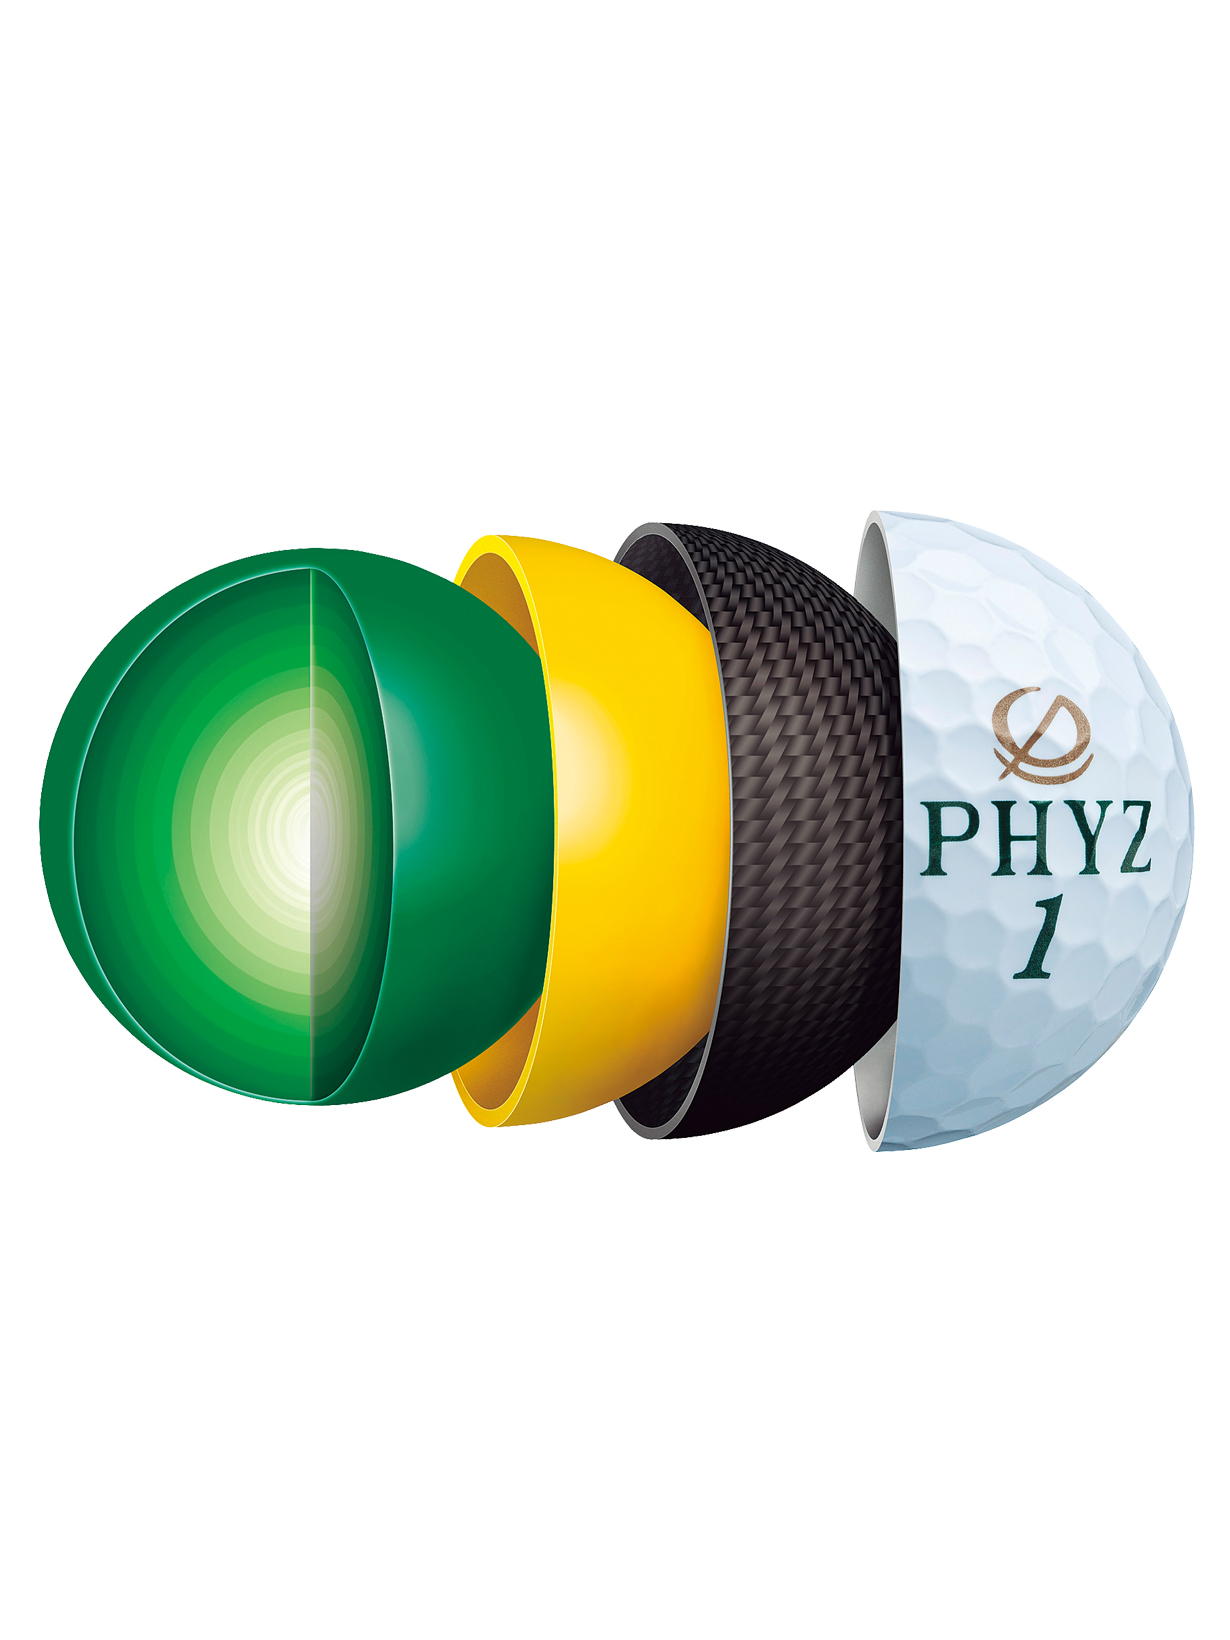 PHYZ 5（ホワイト）[半ダース：6個](ホワイト): ボール|BRIDGESTONE SPORTS Online Store|ブリヂストン スポーツオンラインストア